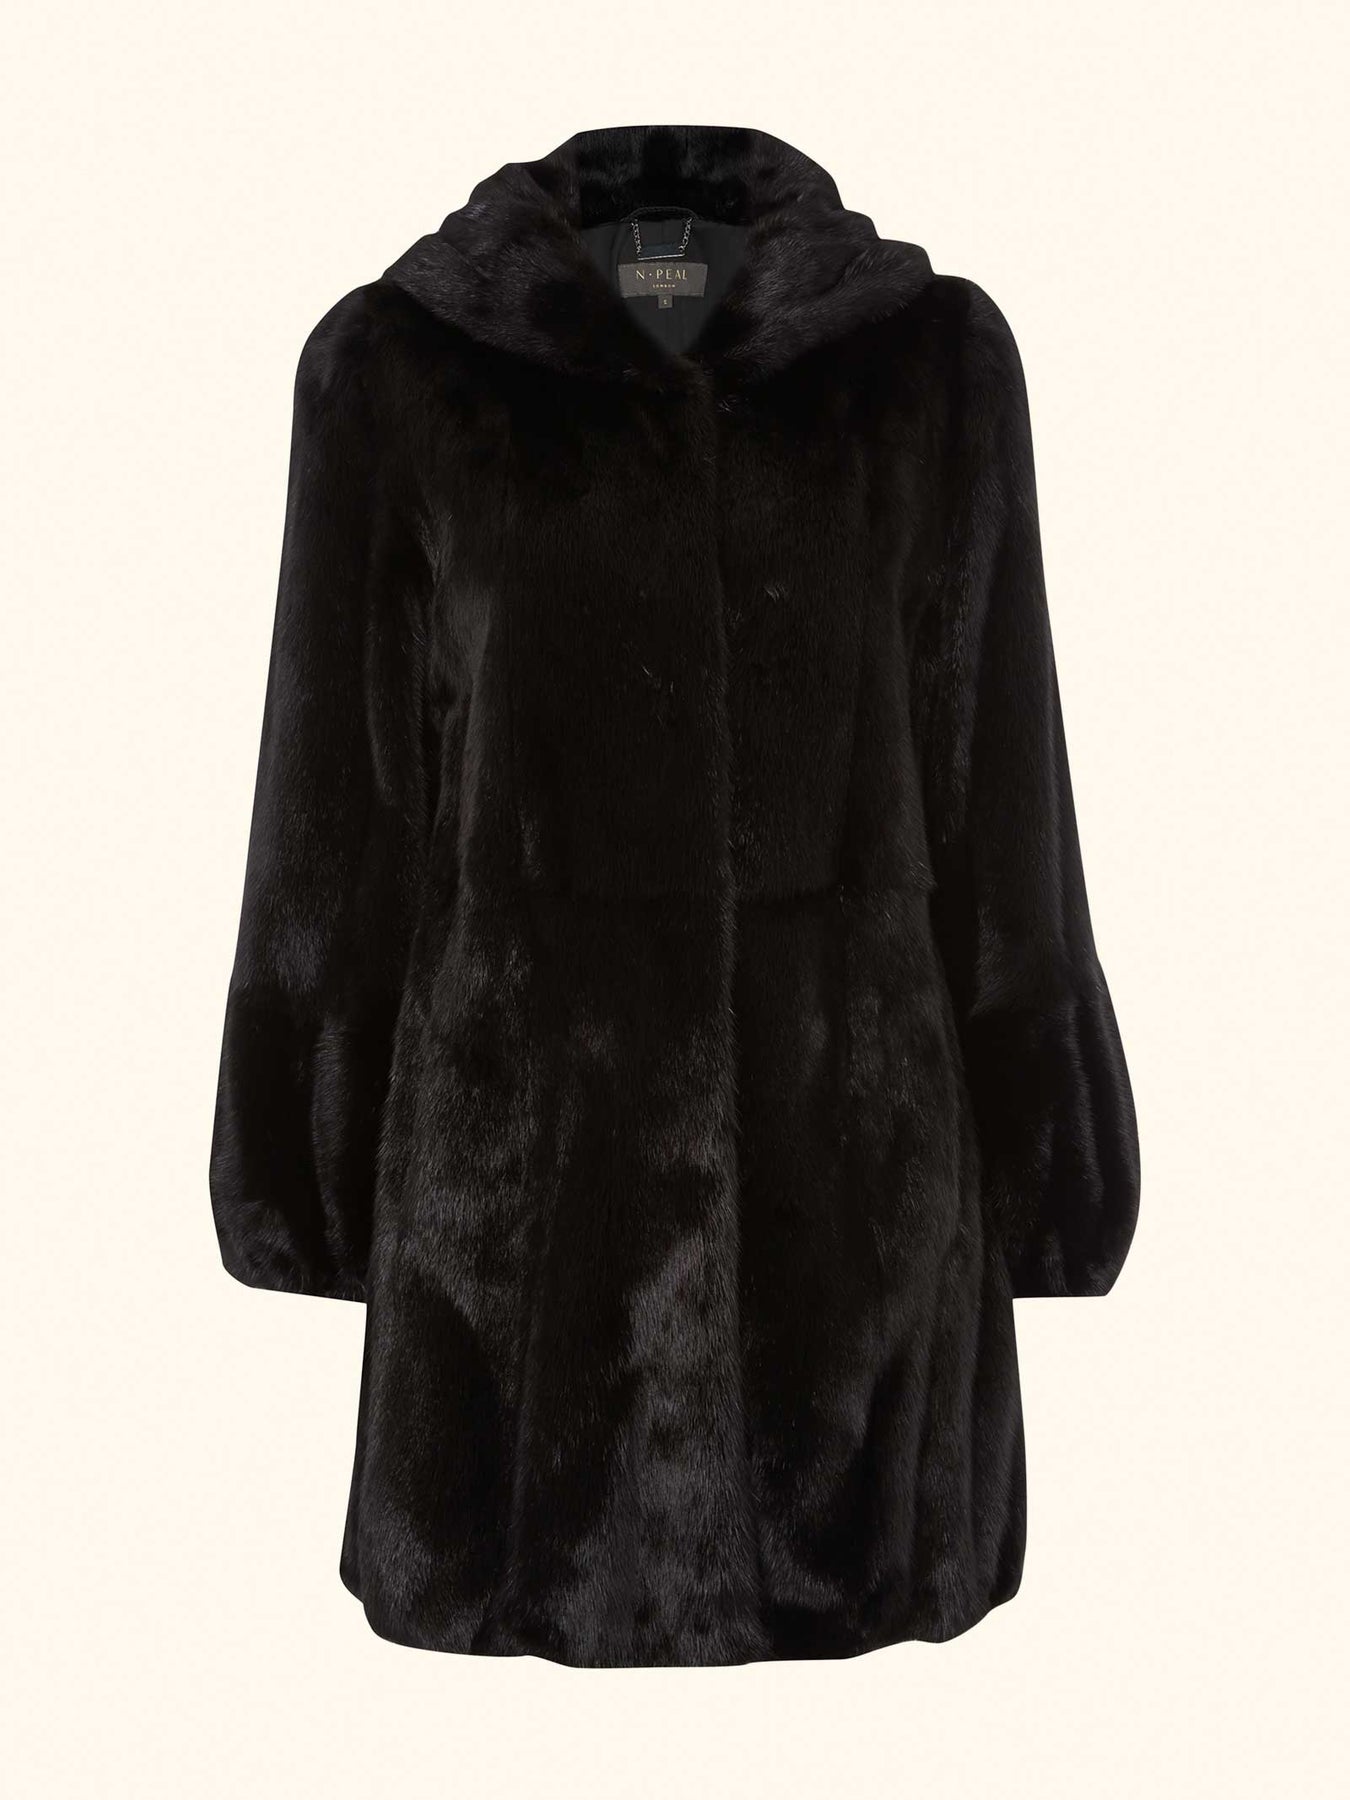 N.Peal Women's Mink Hooded Coat Black